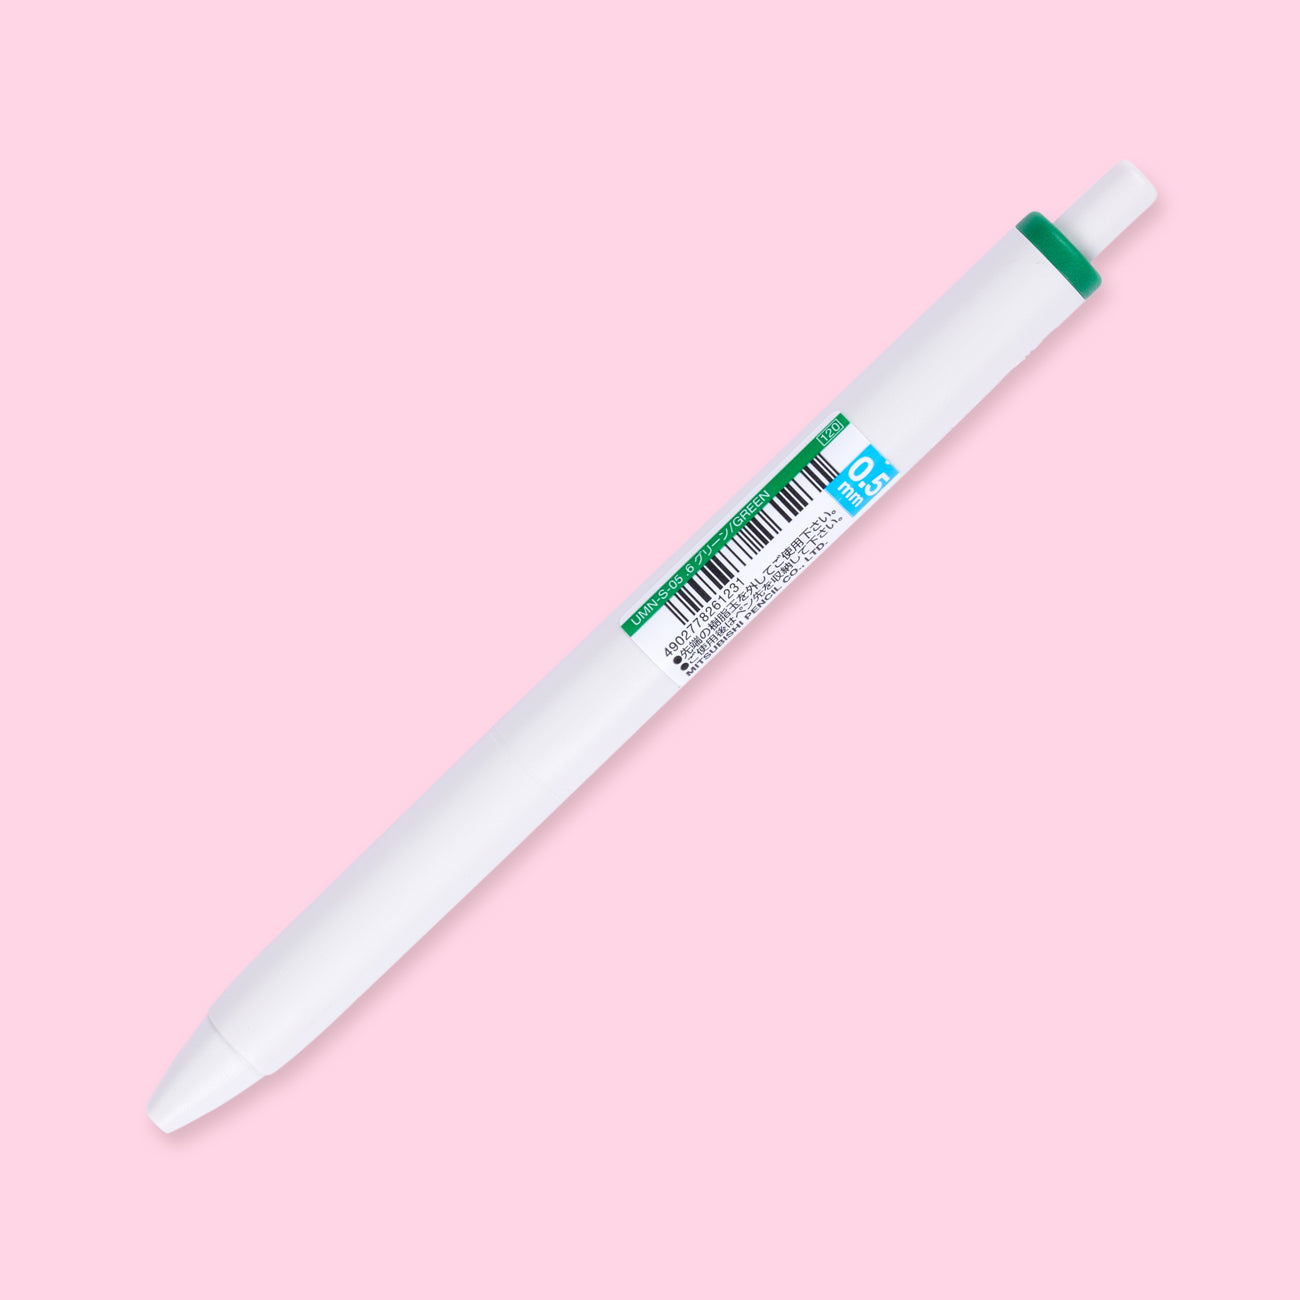 Uniball One Gel Pen 0.5mm - Green